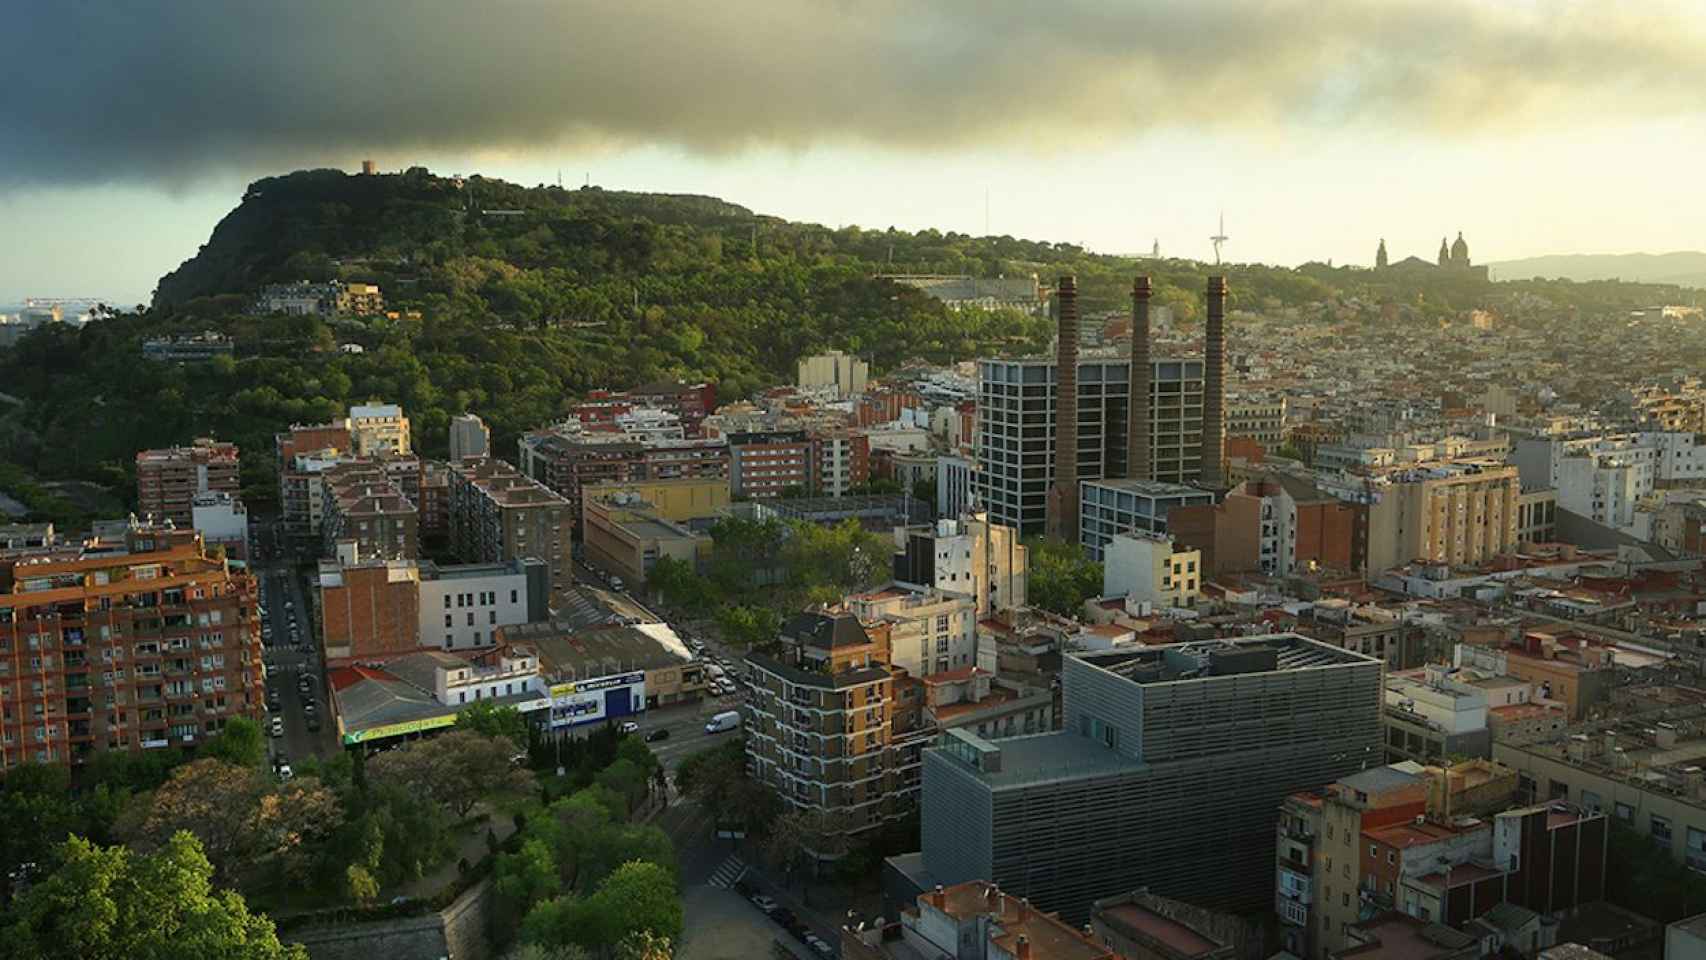 Vista aérea del barrio del Poble-sec / AYUNTAMIENTO DE BARCELONA